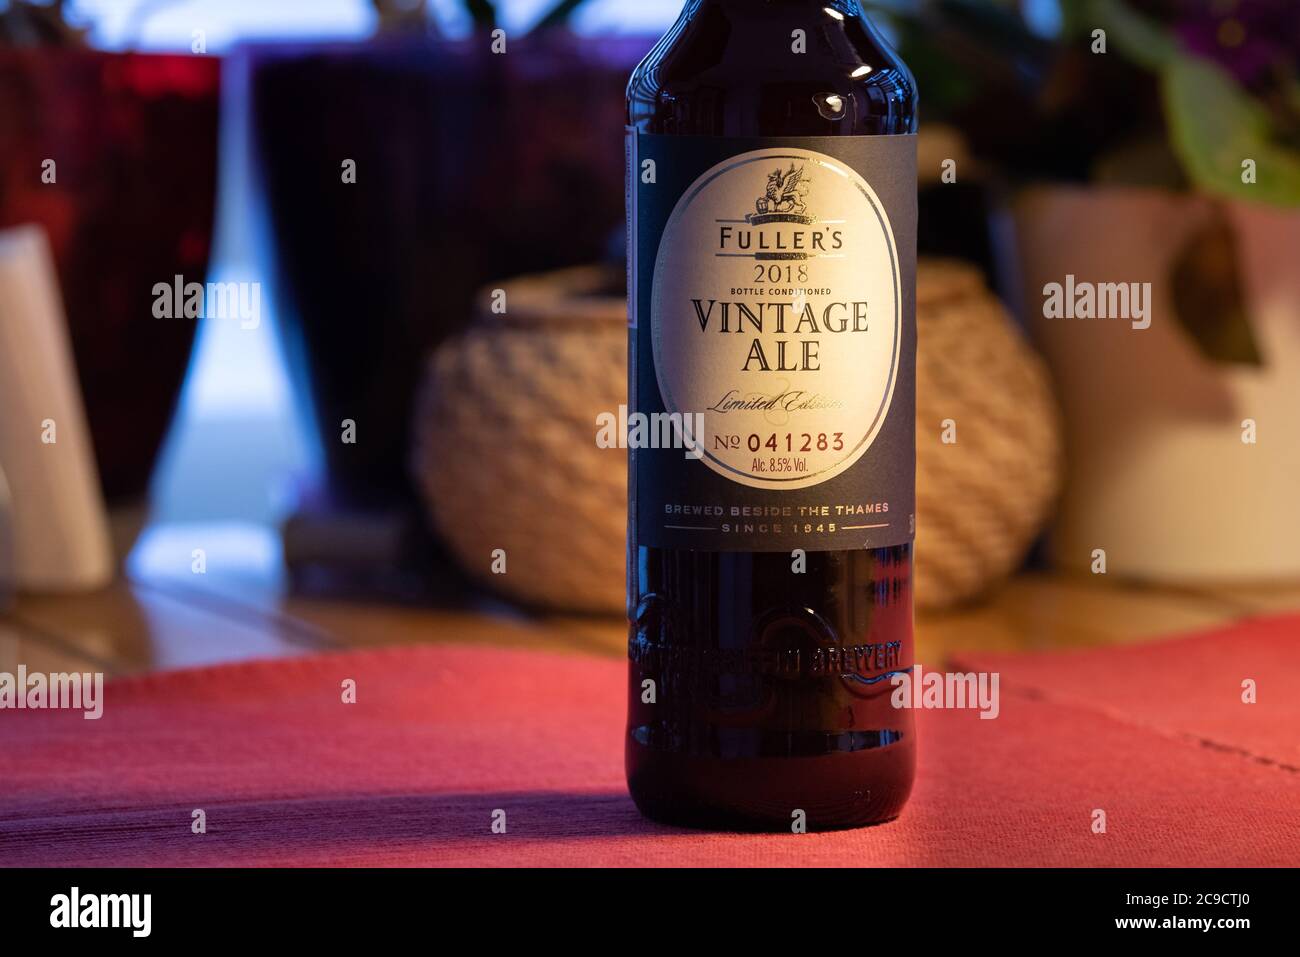 Ankara, TURCHIA - 1 gennaio 2020: Una birra speciale di una delle birrerie britanniche più conosciute, la Fuller's Vintage Ale, è conosciuta in tutto il mondo. Foto Stock